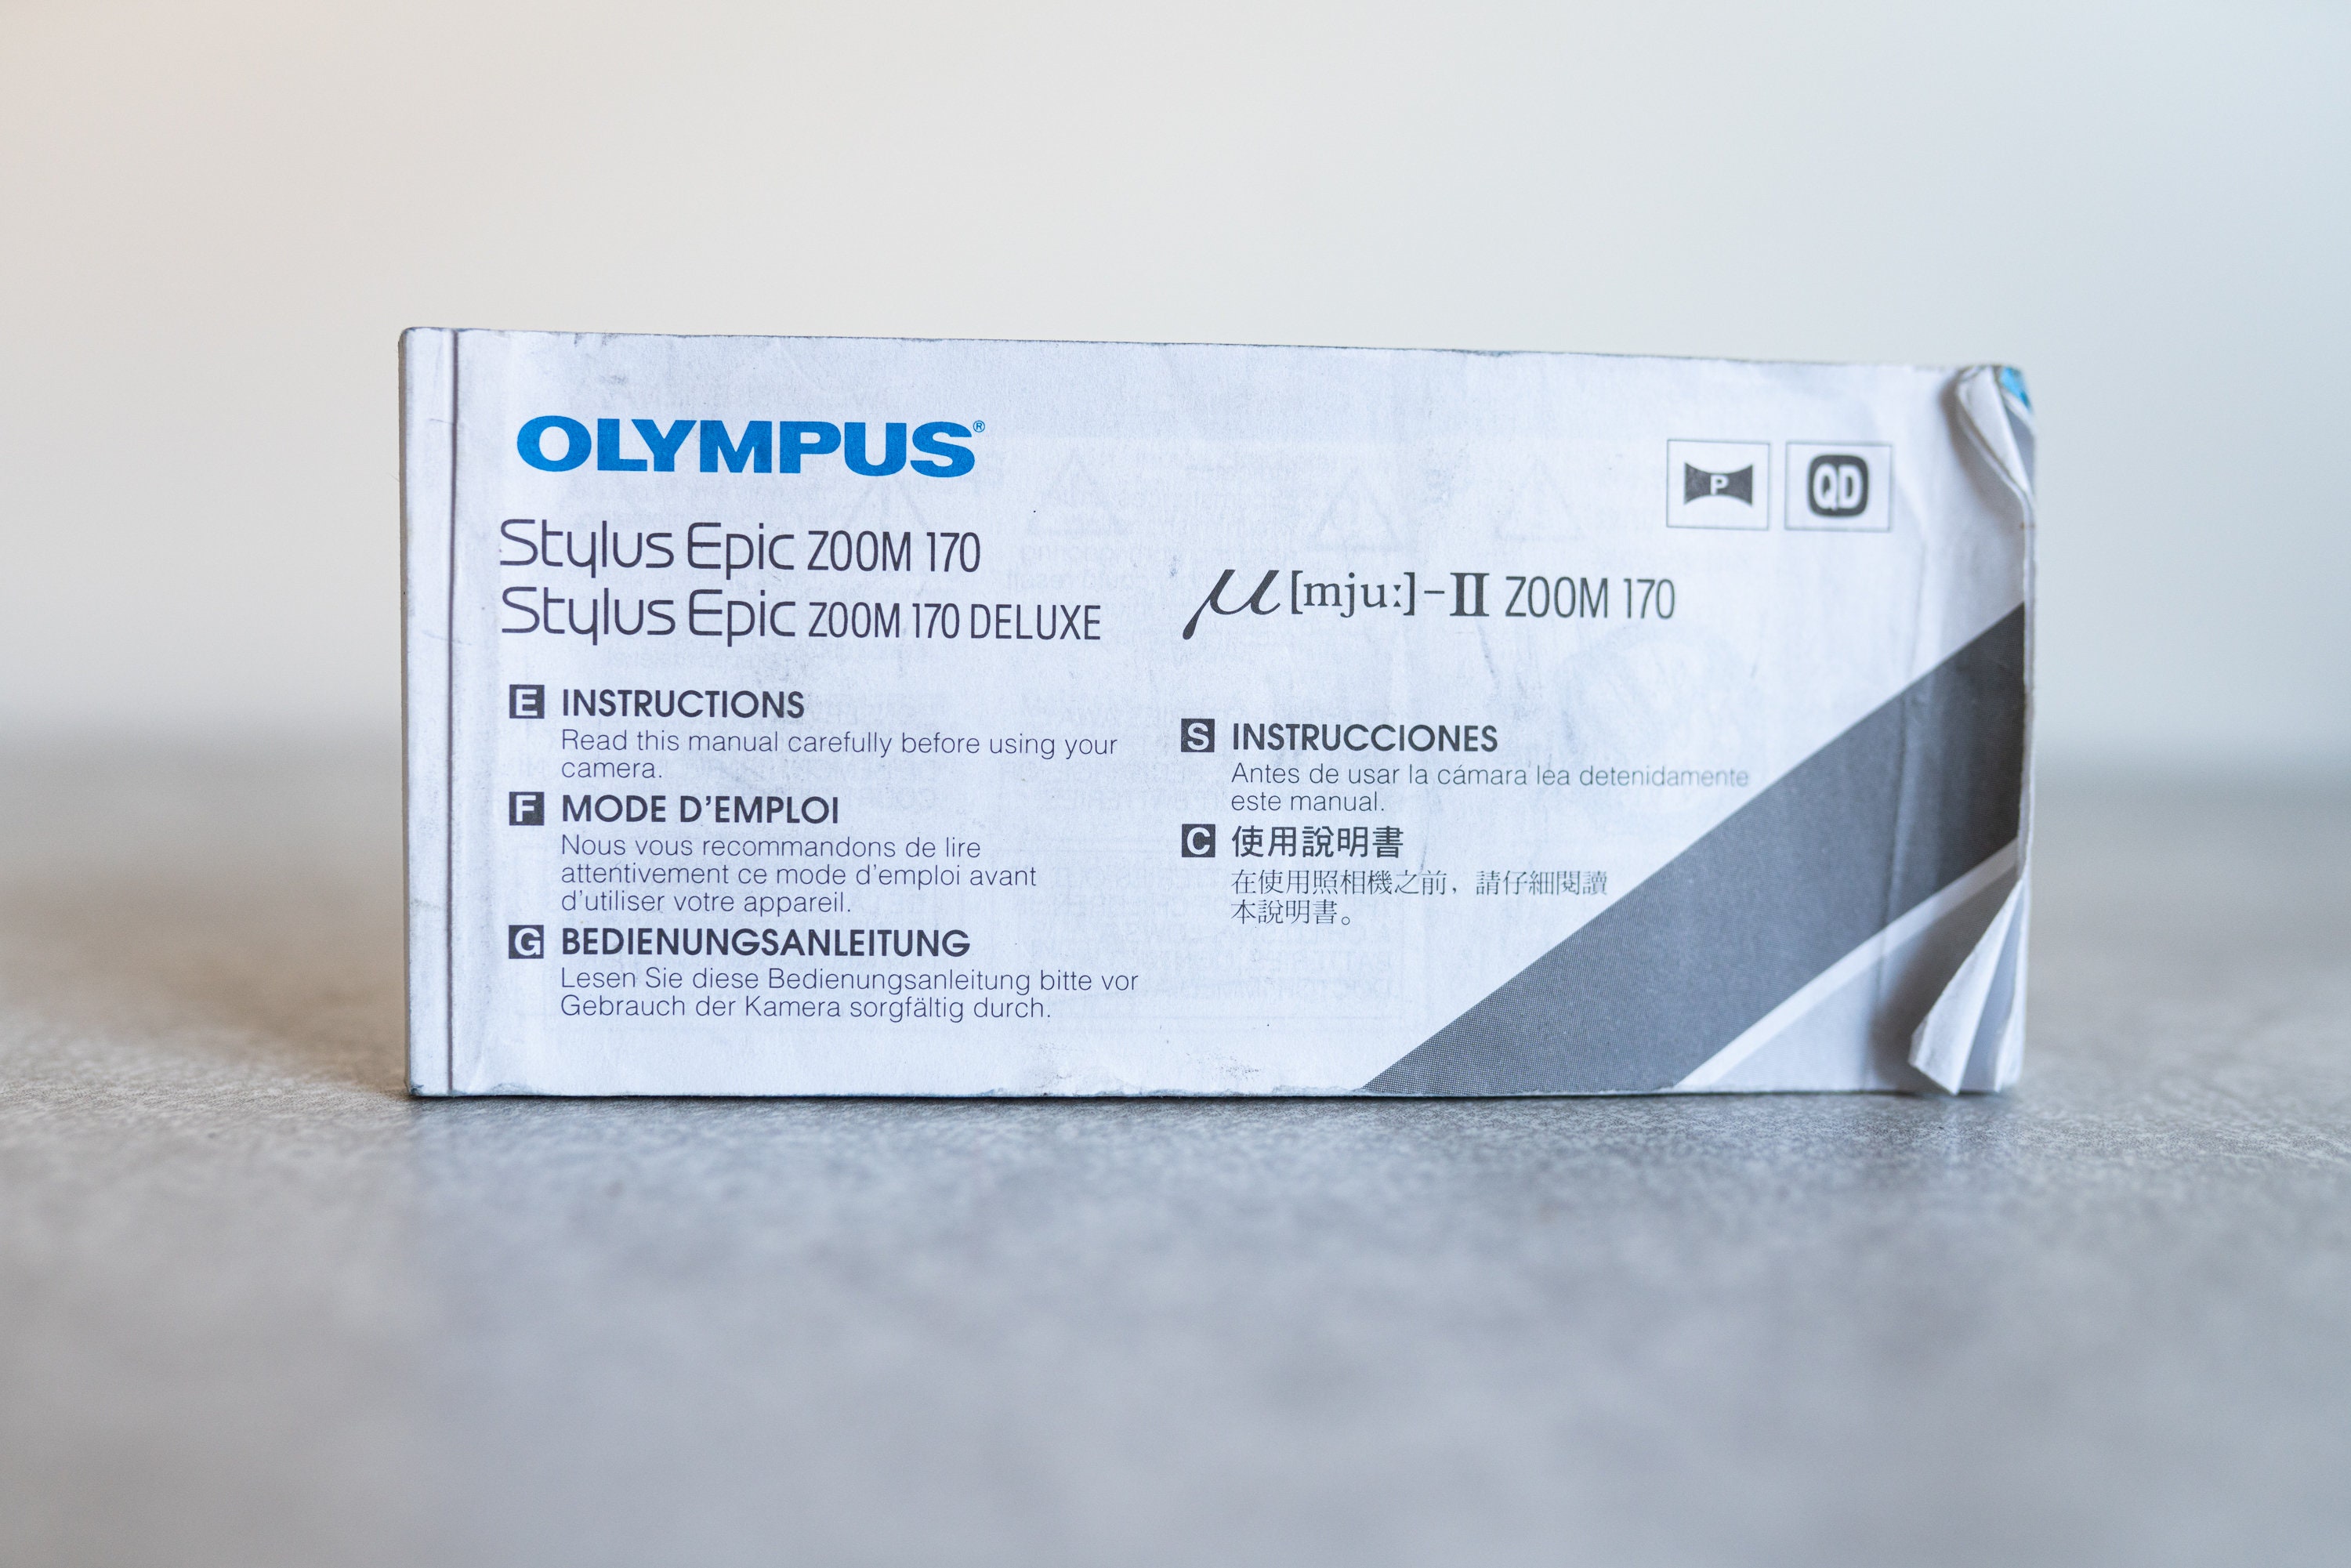 Olympus Stylus Epic Zoom 170 / 170 Deluxe / MJU-II 170VF | Etsy